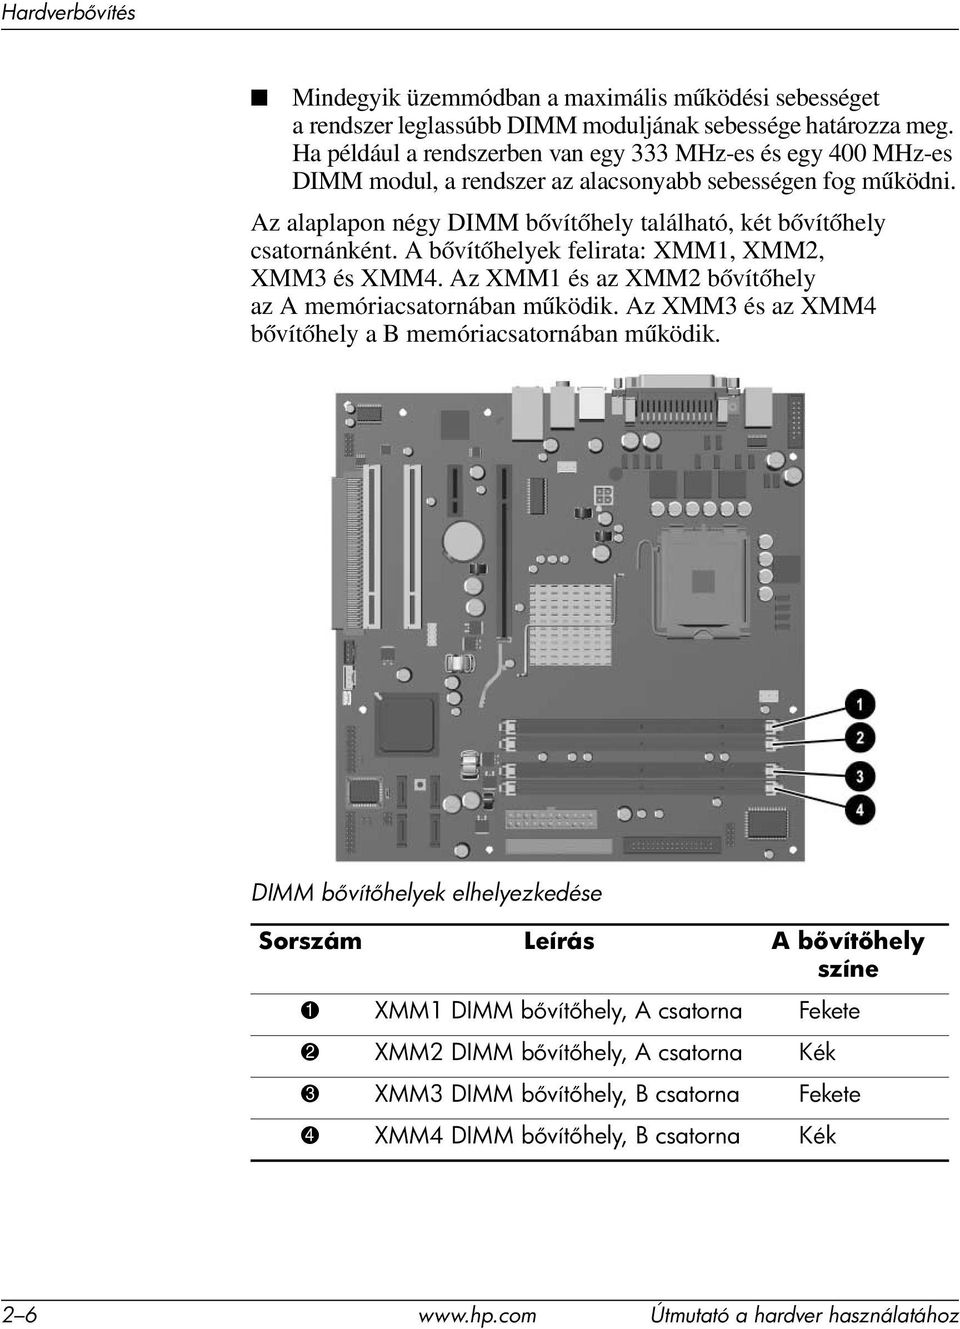 Az alaplapon négy DIMM bővítőhely található, két bővítőhely csatornánként. A bővítőhelyek felirata: XMM1, XMM2, XMM3 és XMM4. Az XMM1 és az XMM2 bővítőhely az A memóriacsatornában működik.